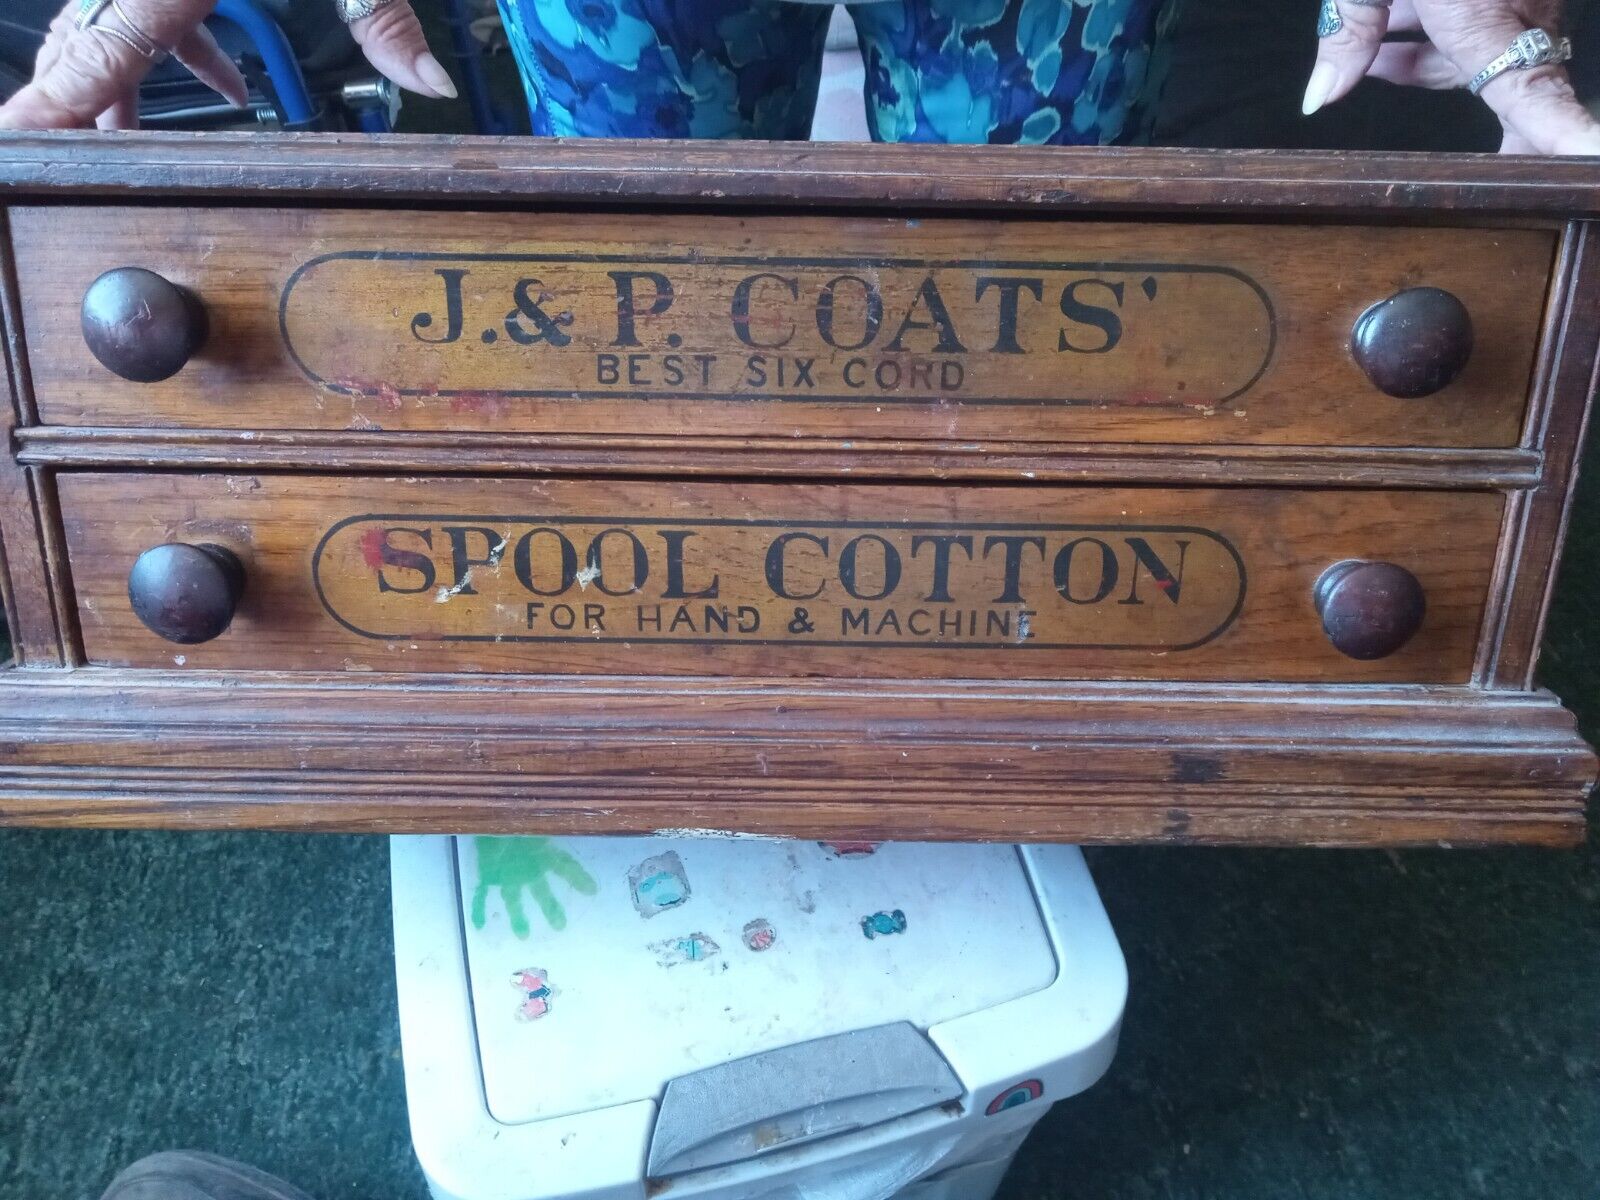 Vintage Wood Sewing Box